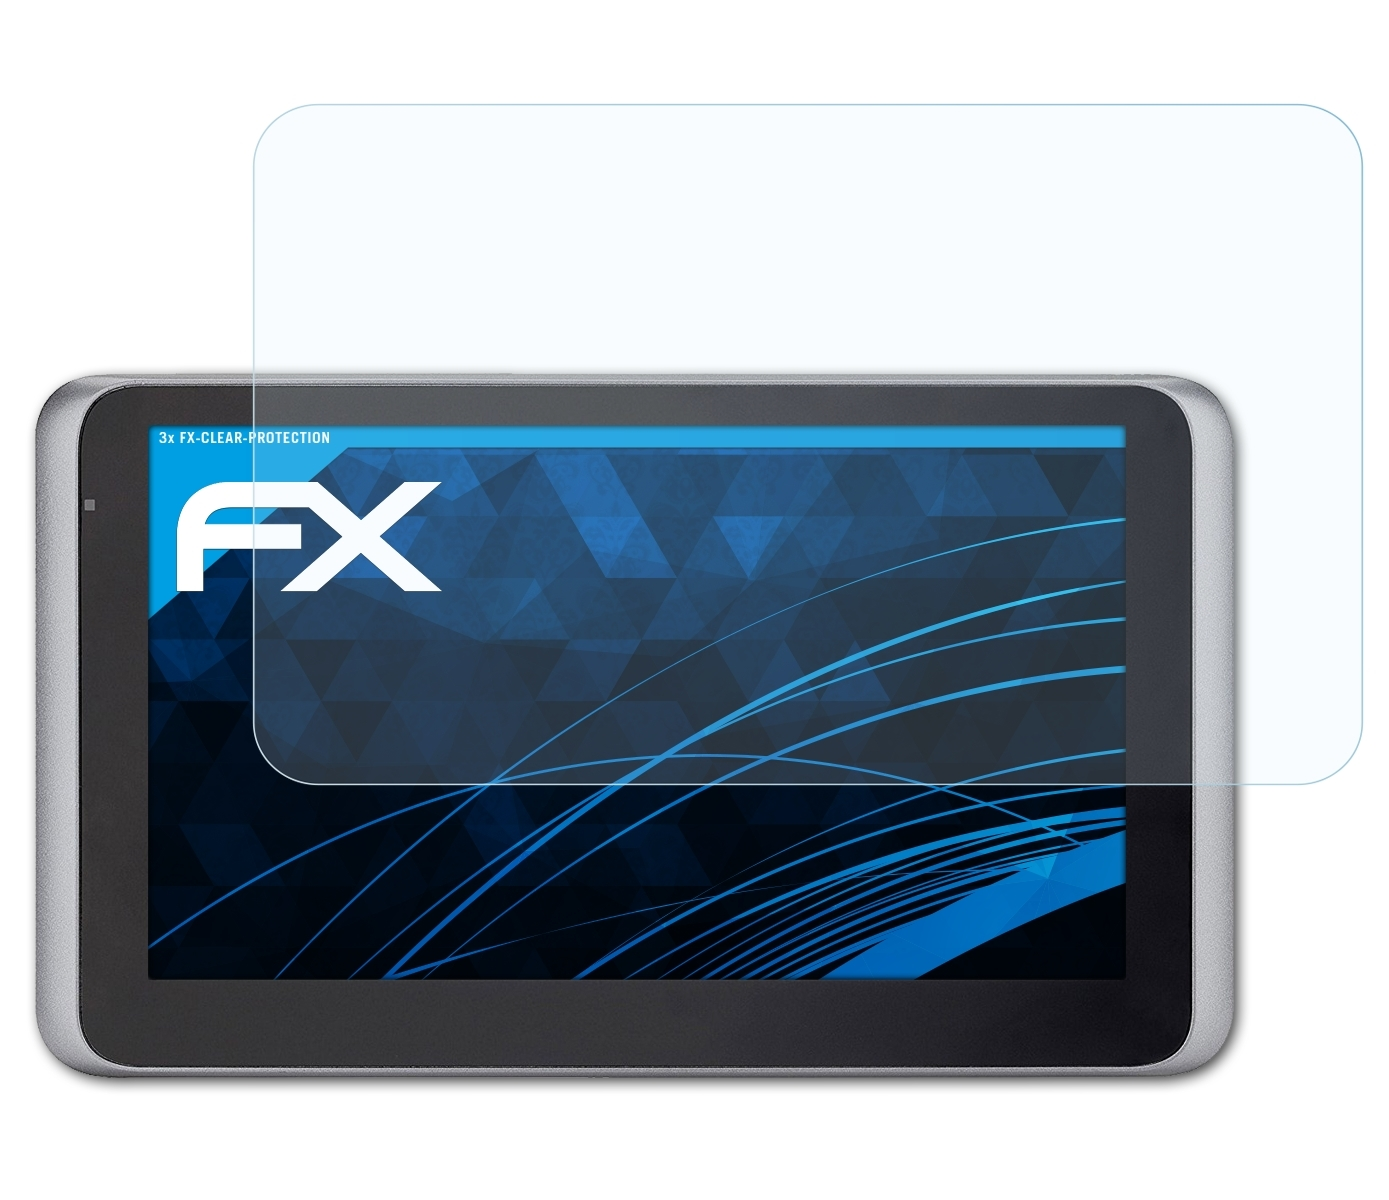 Displayschutz(für ATFOLIX 3x 55 Drive Mio LM) MiVue FX-Clear